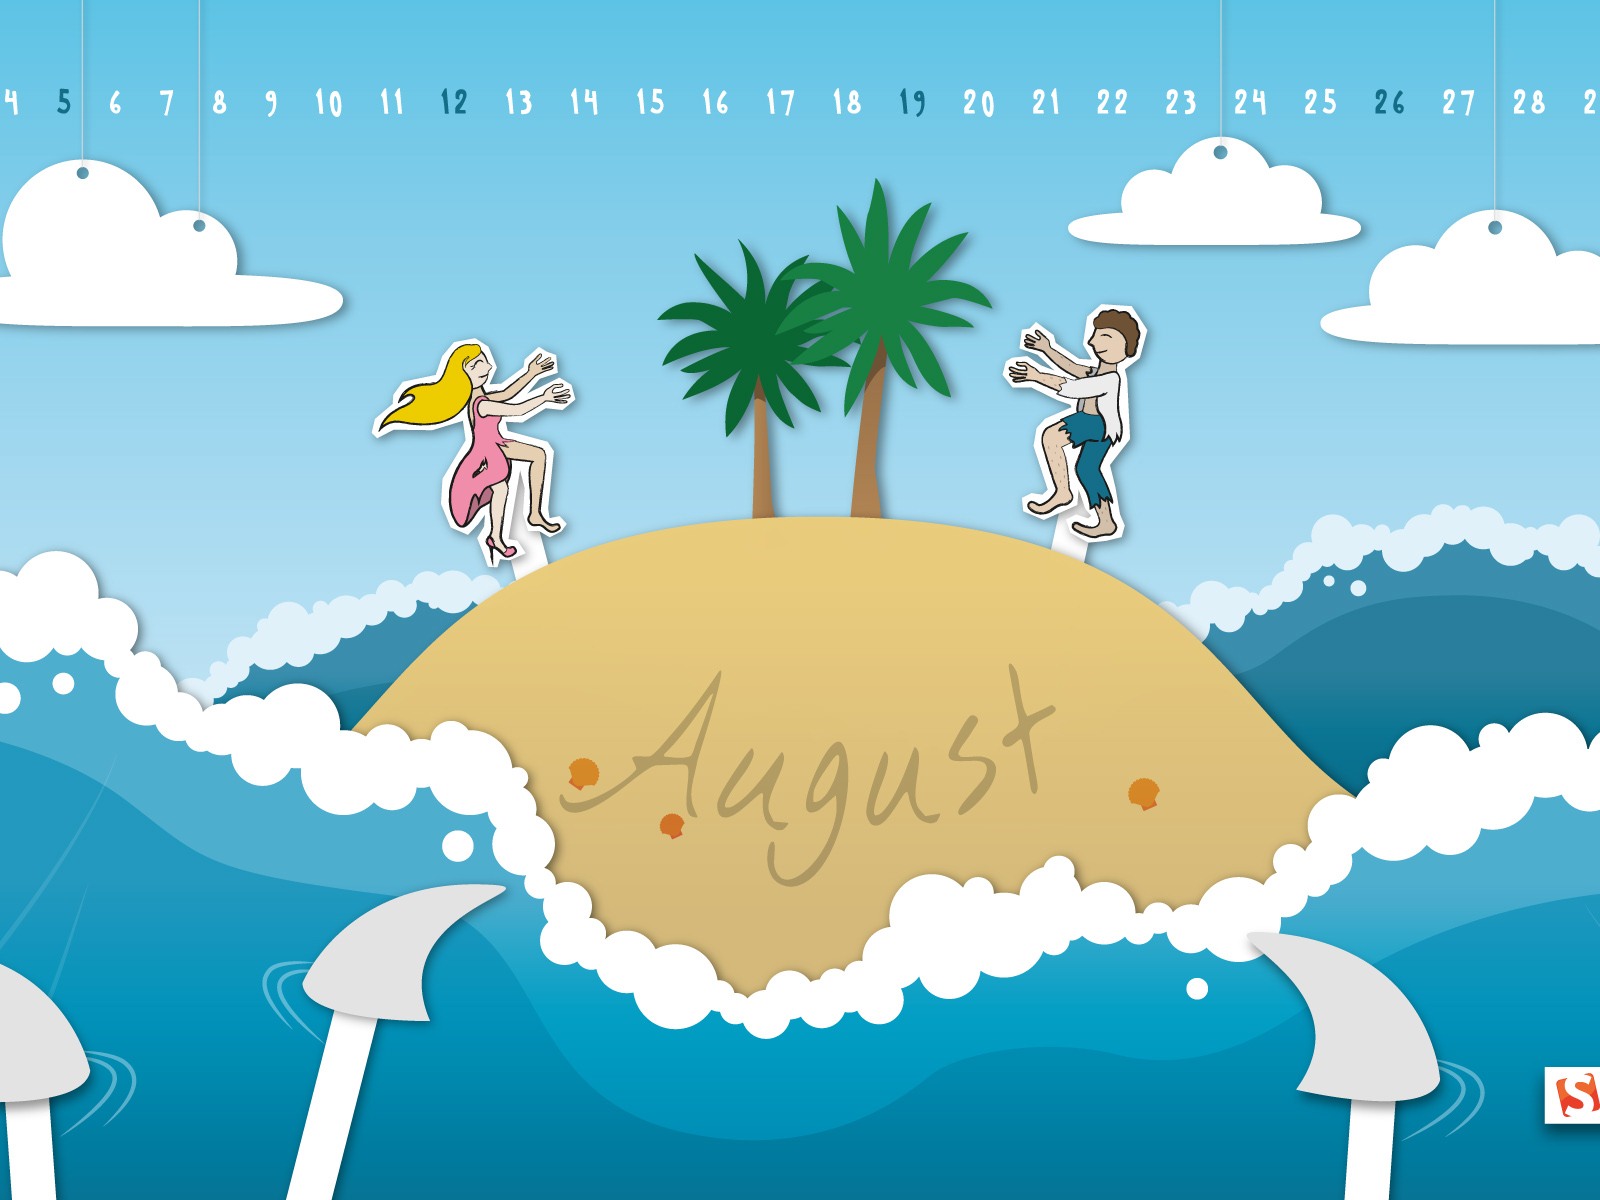 August 2012 Calendar wallpapers (2) #8 - 1600x1200